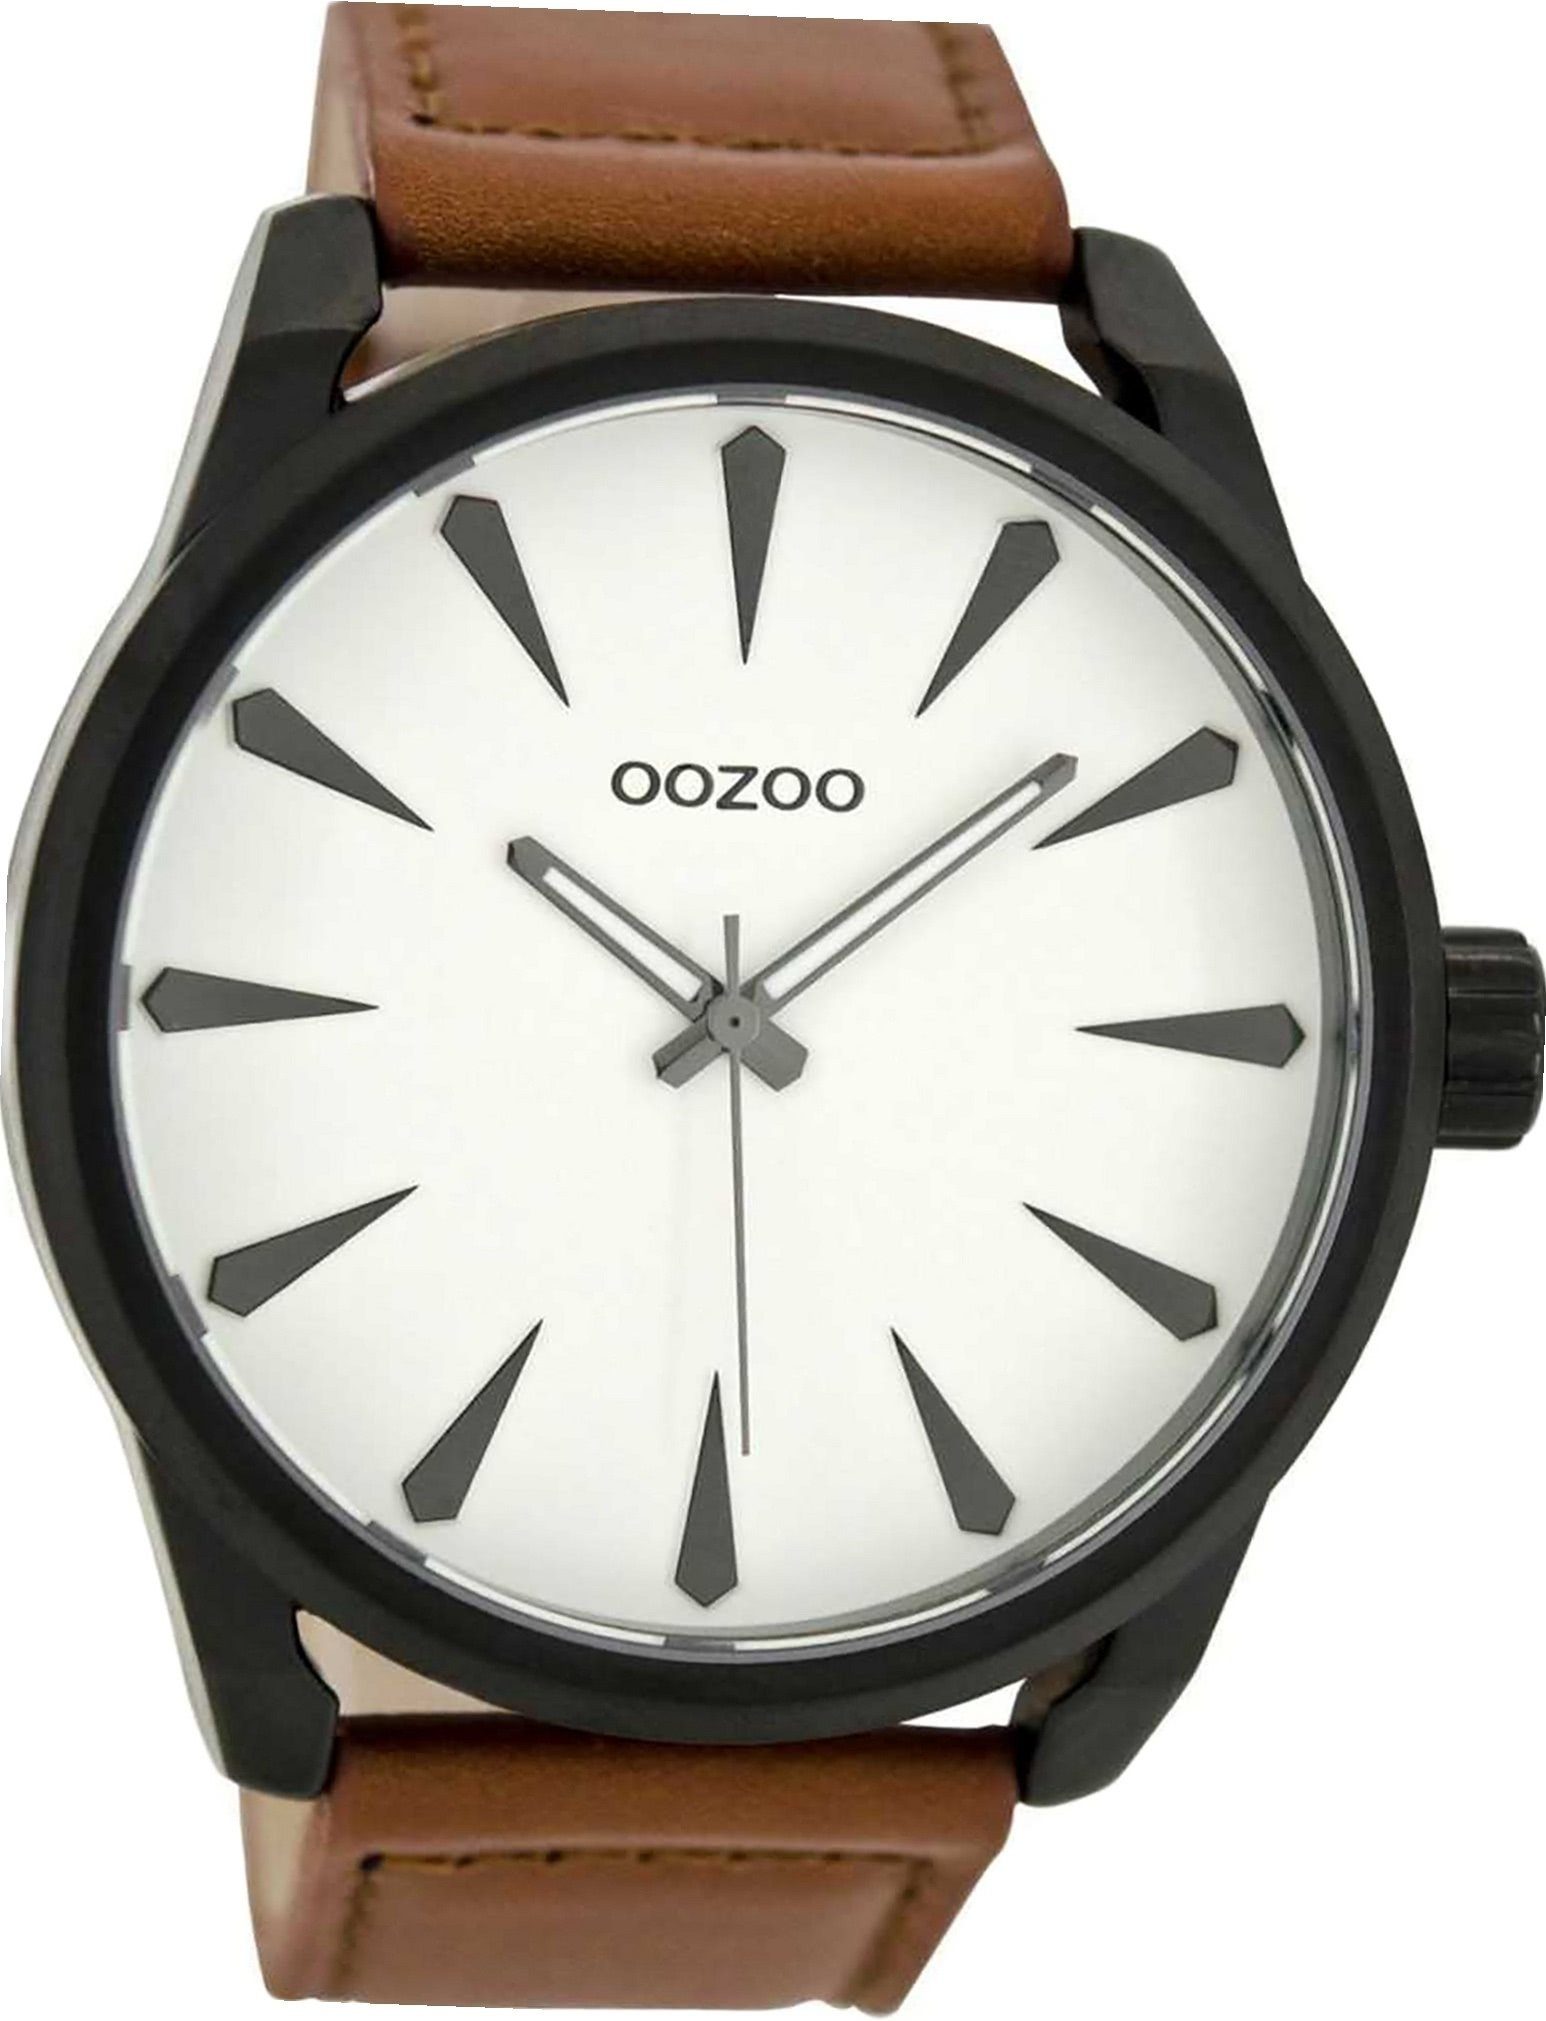 OOZOO Quarzuhr Oozoo Leder Herren Uhr C8226 Analog, Herrenuhr Lederarmband braun, rundes Gehäuse, extra groß (ca. 48mm)